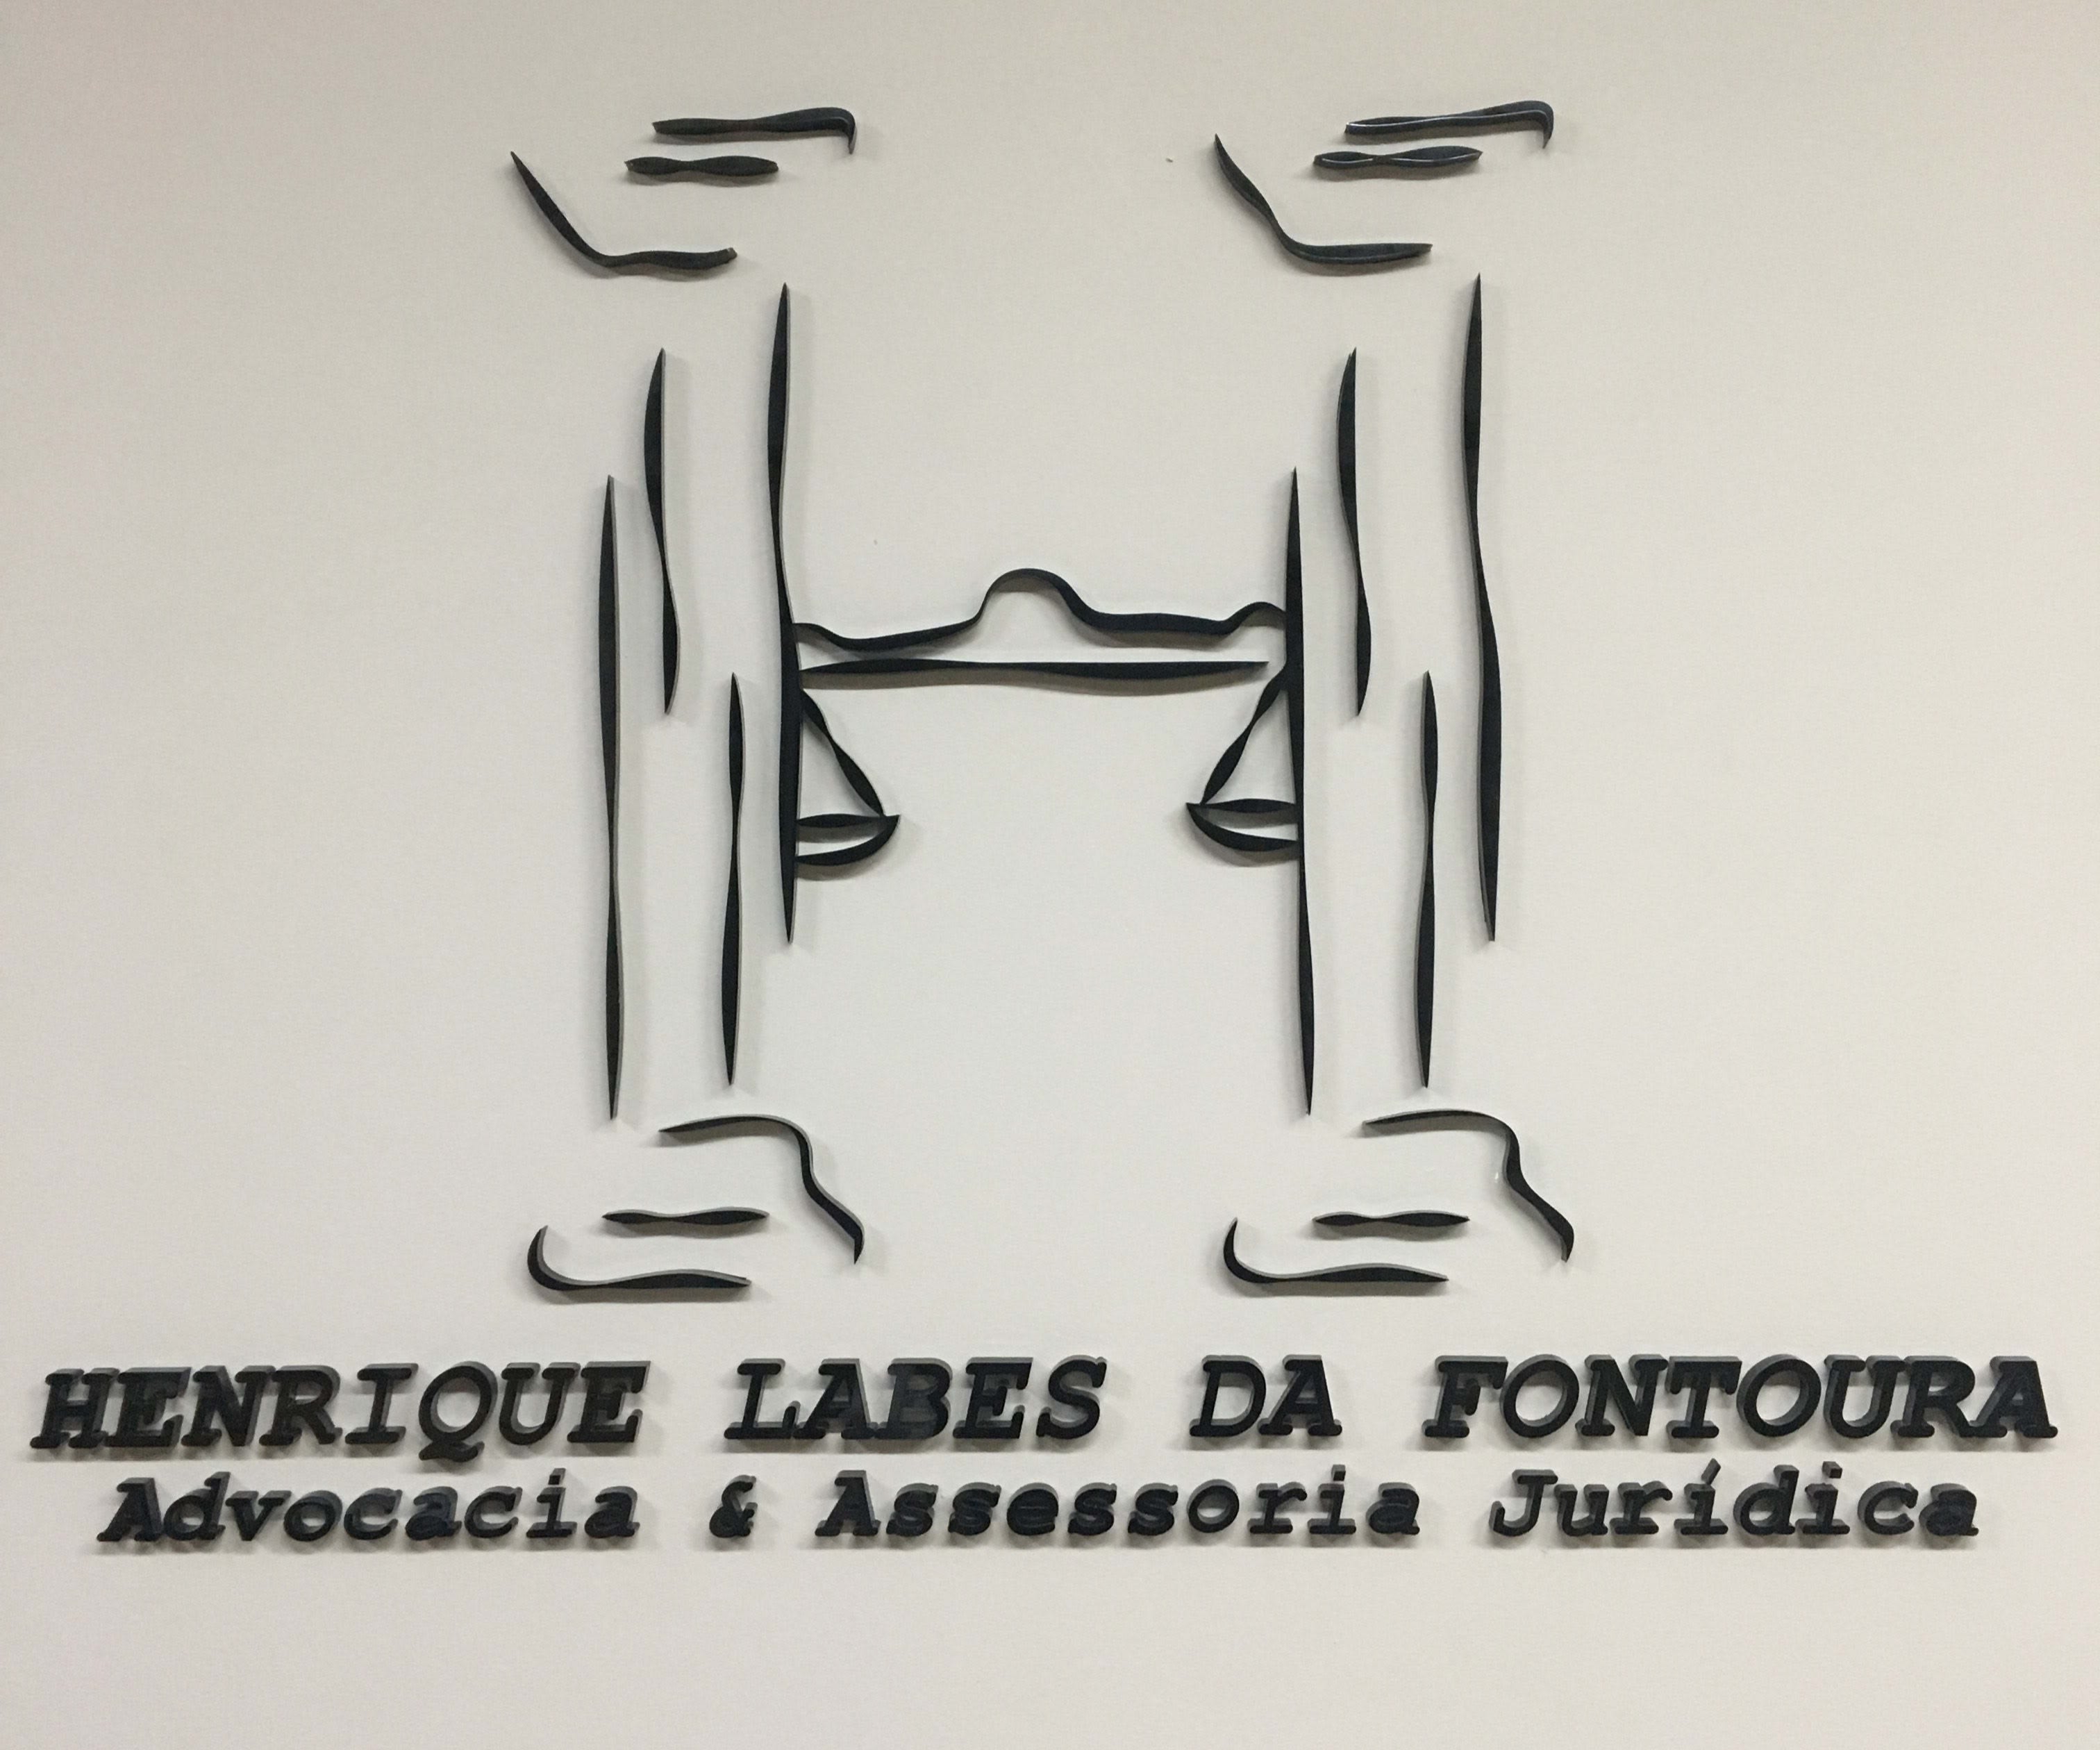 Henrique Labes da Fontoura - Advocacia & Assessoria Jurídica